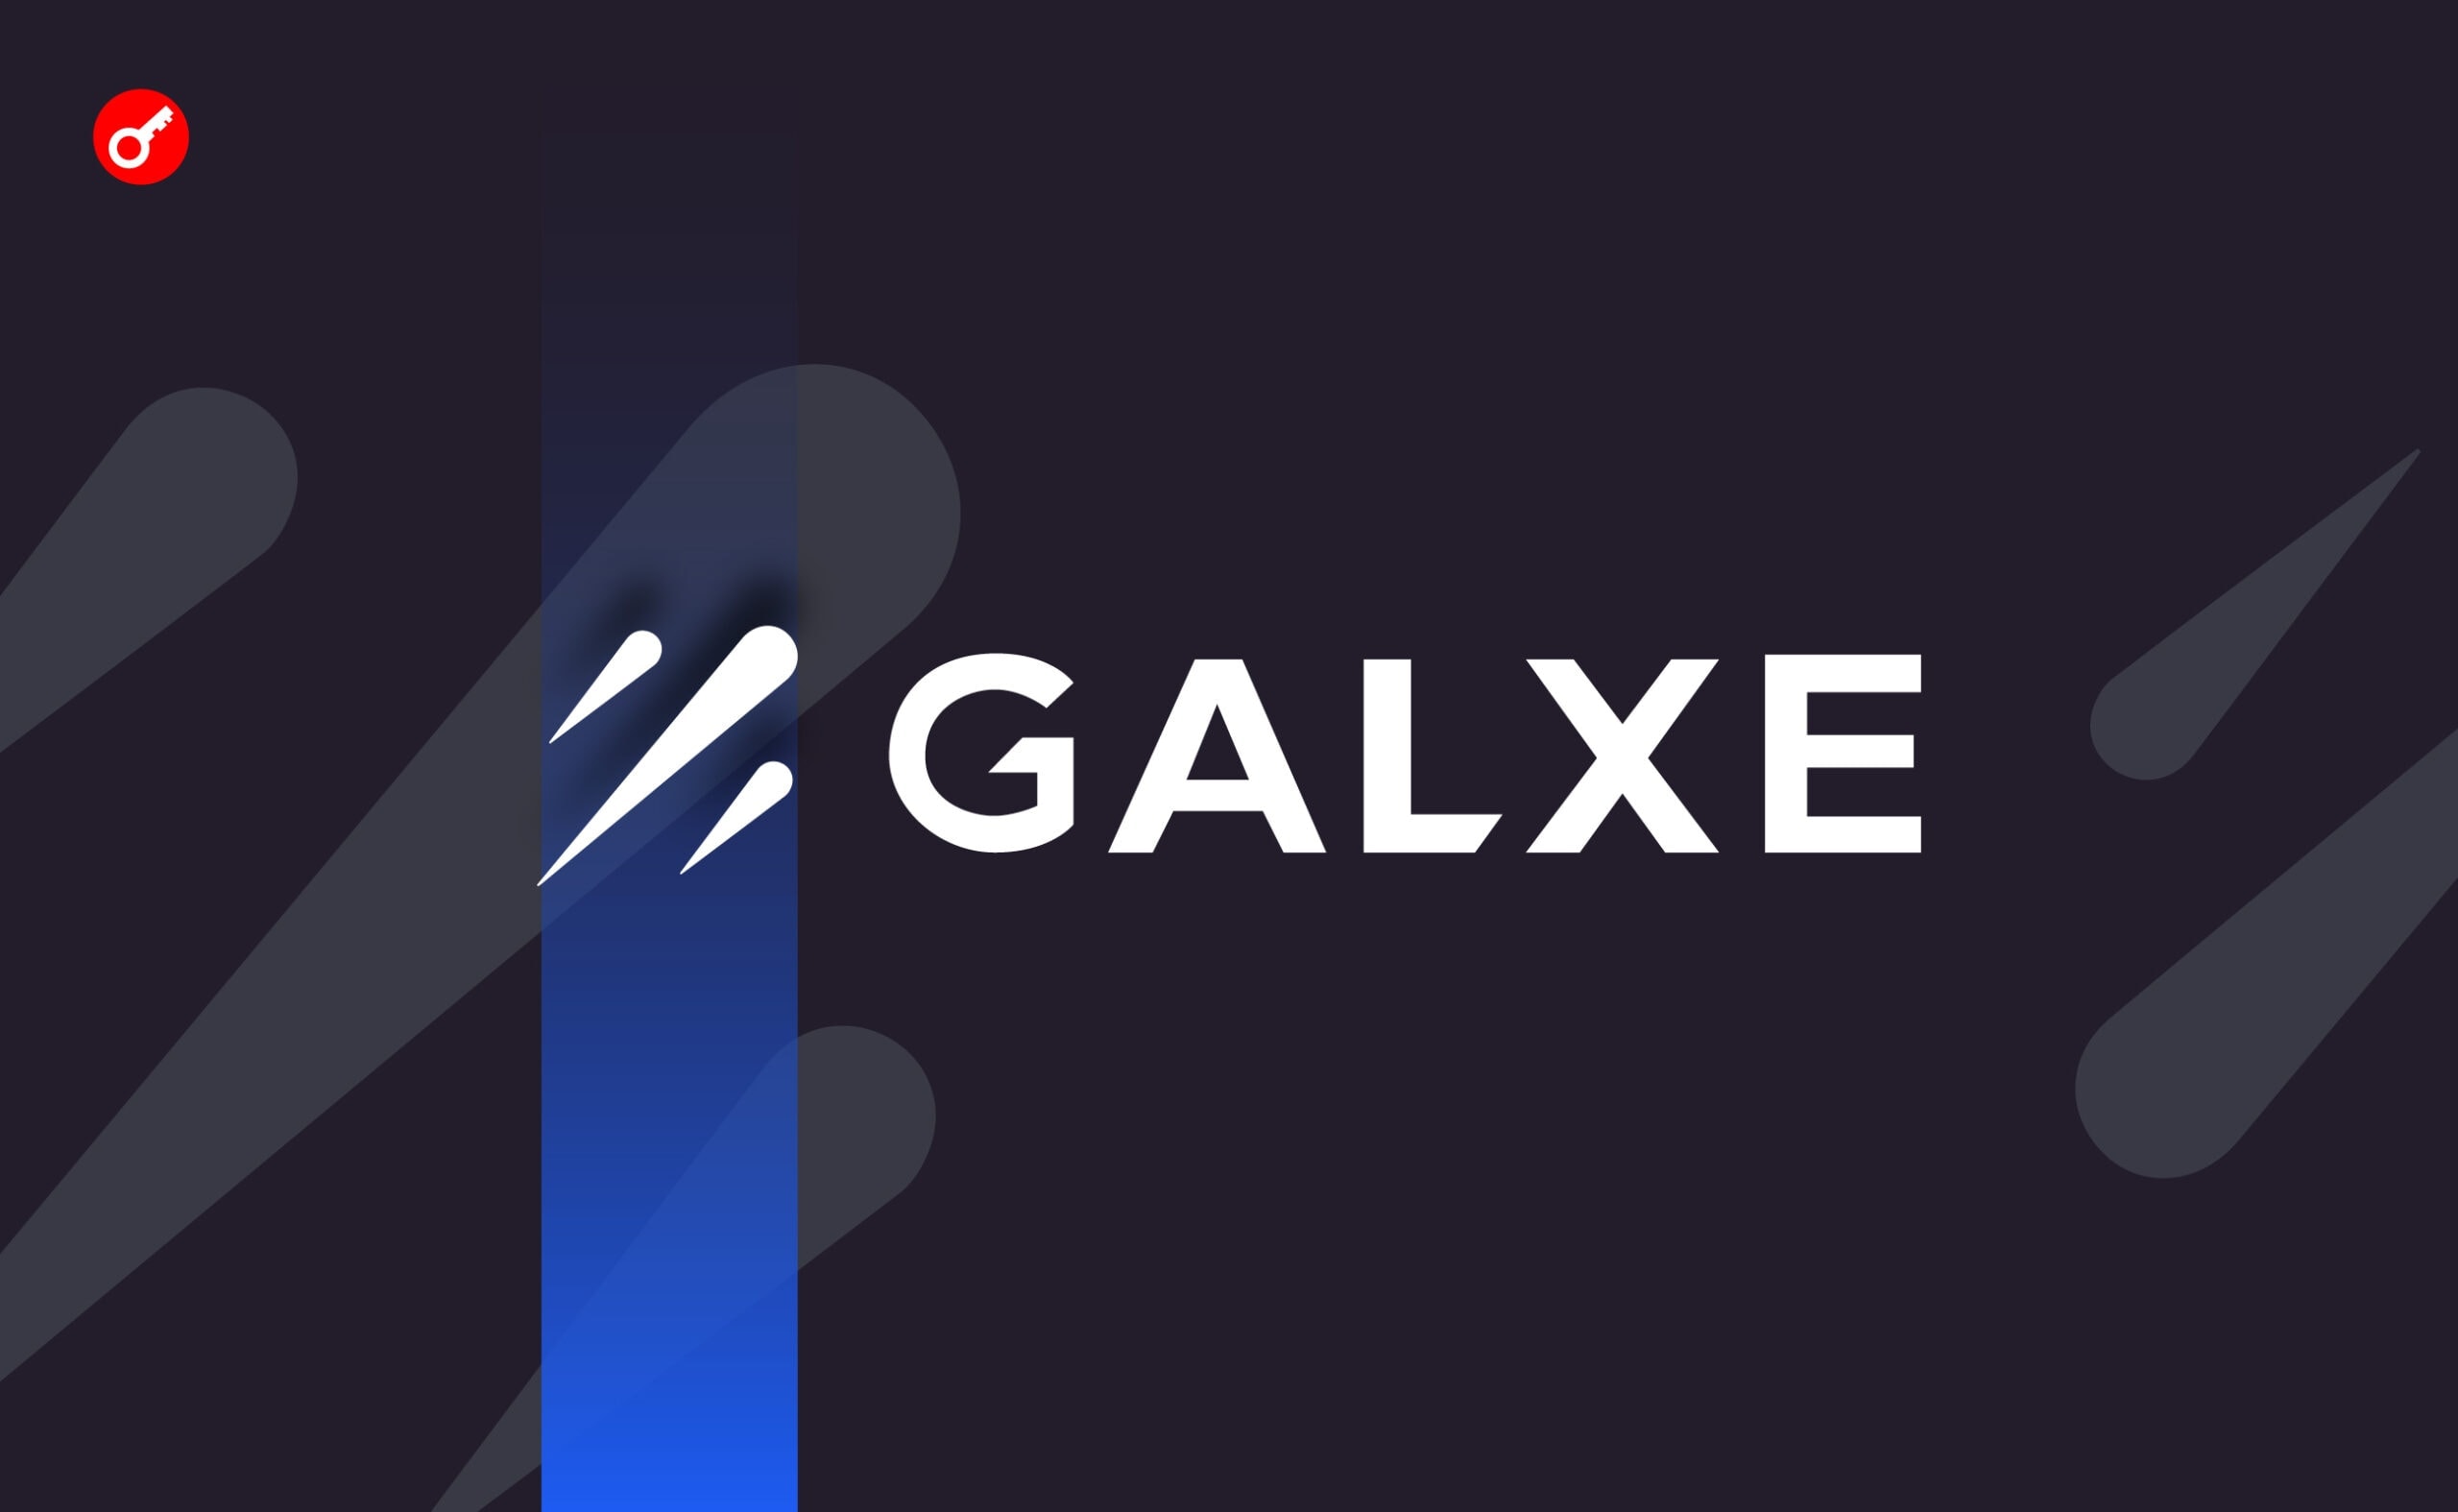 Команда Galxe оголосила про повернення коштів постраждалим. Головний колаж новини.